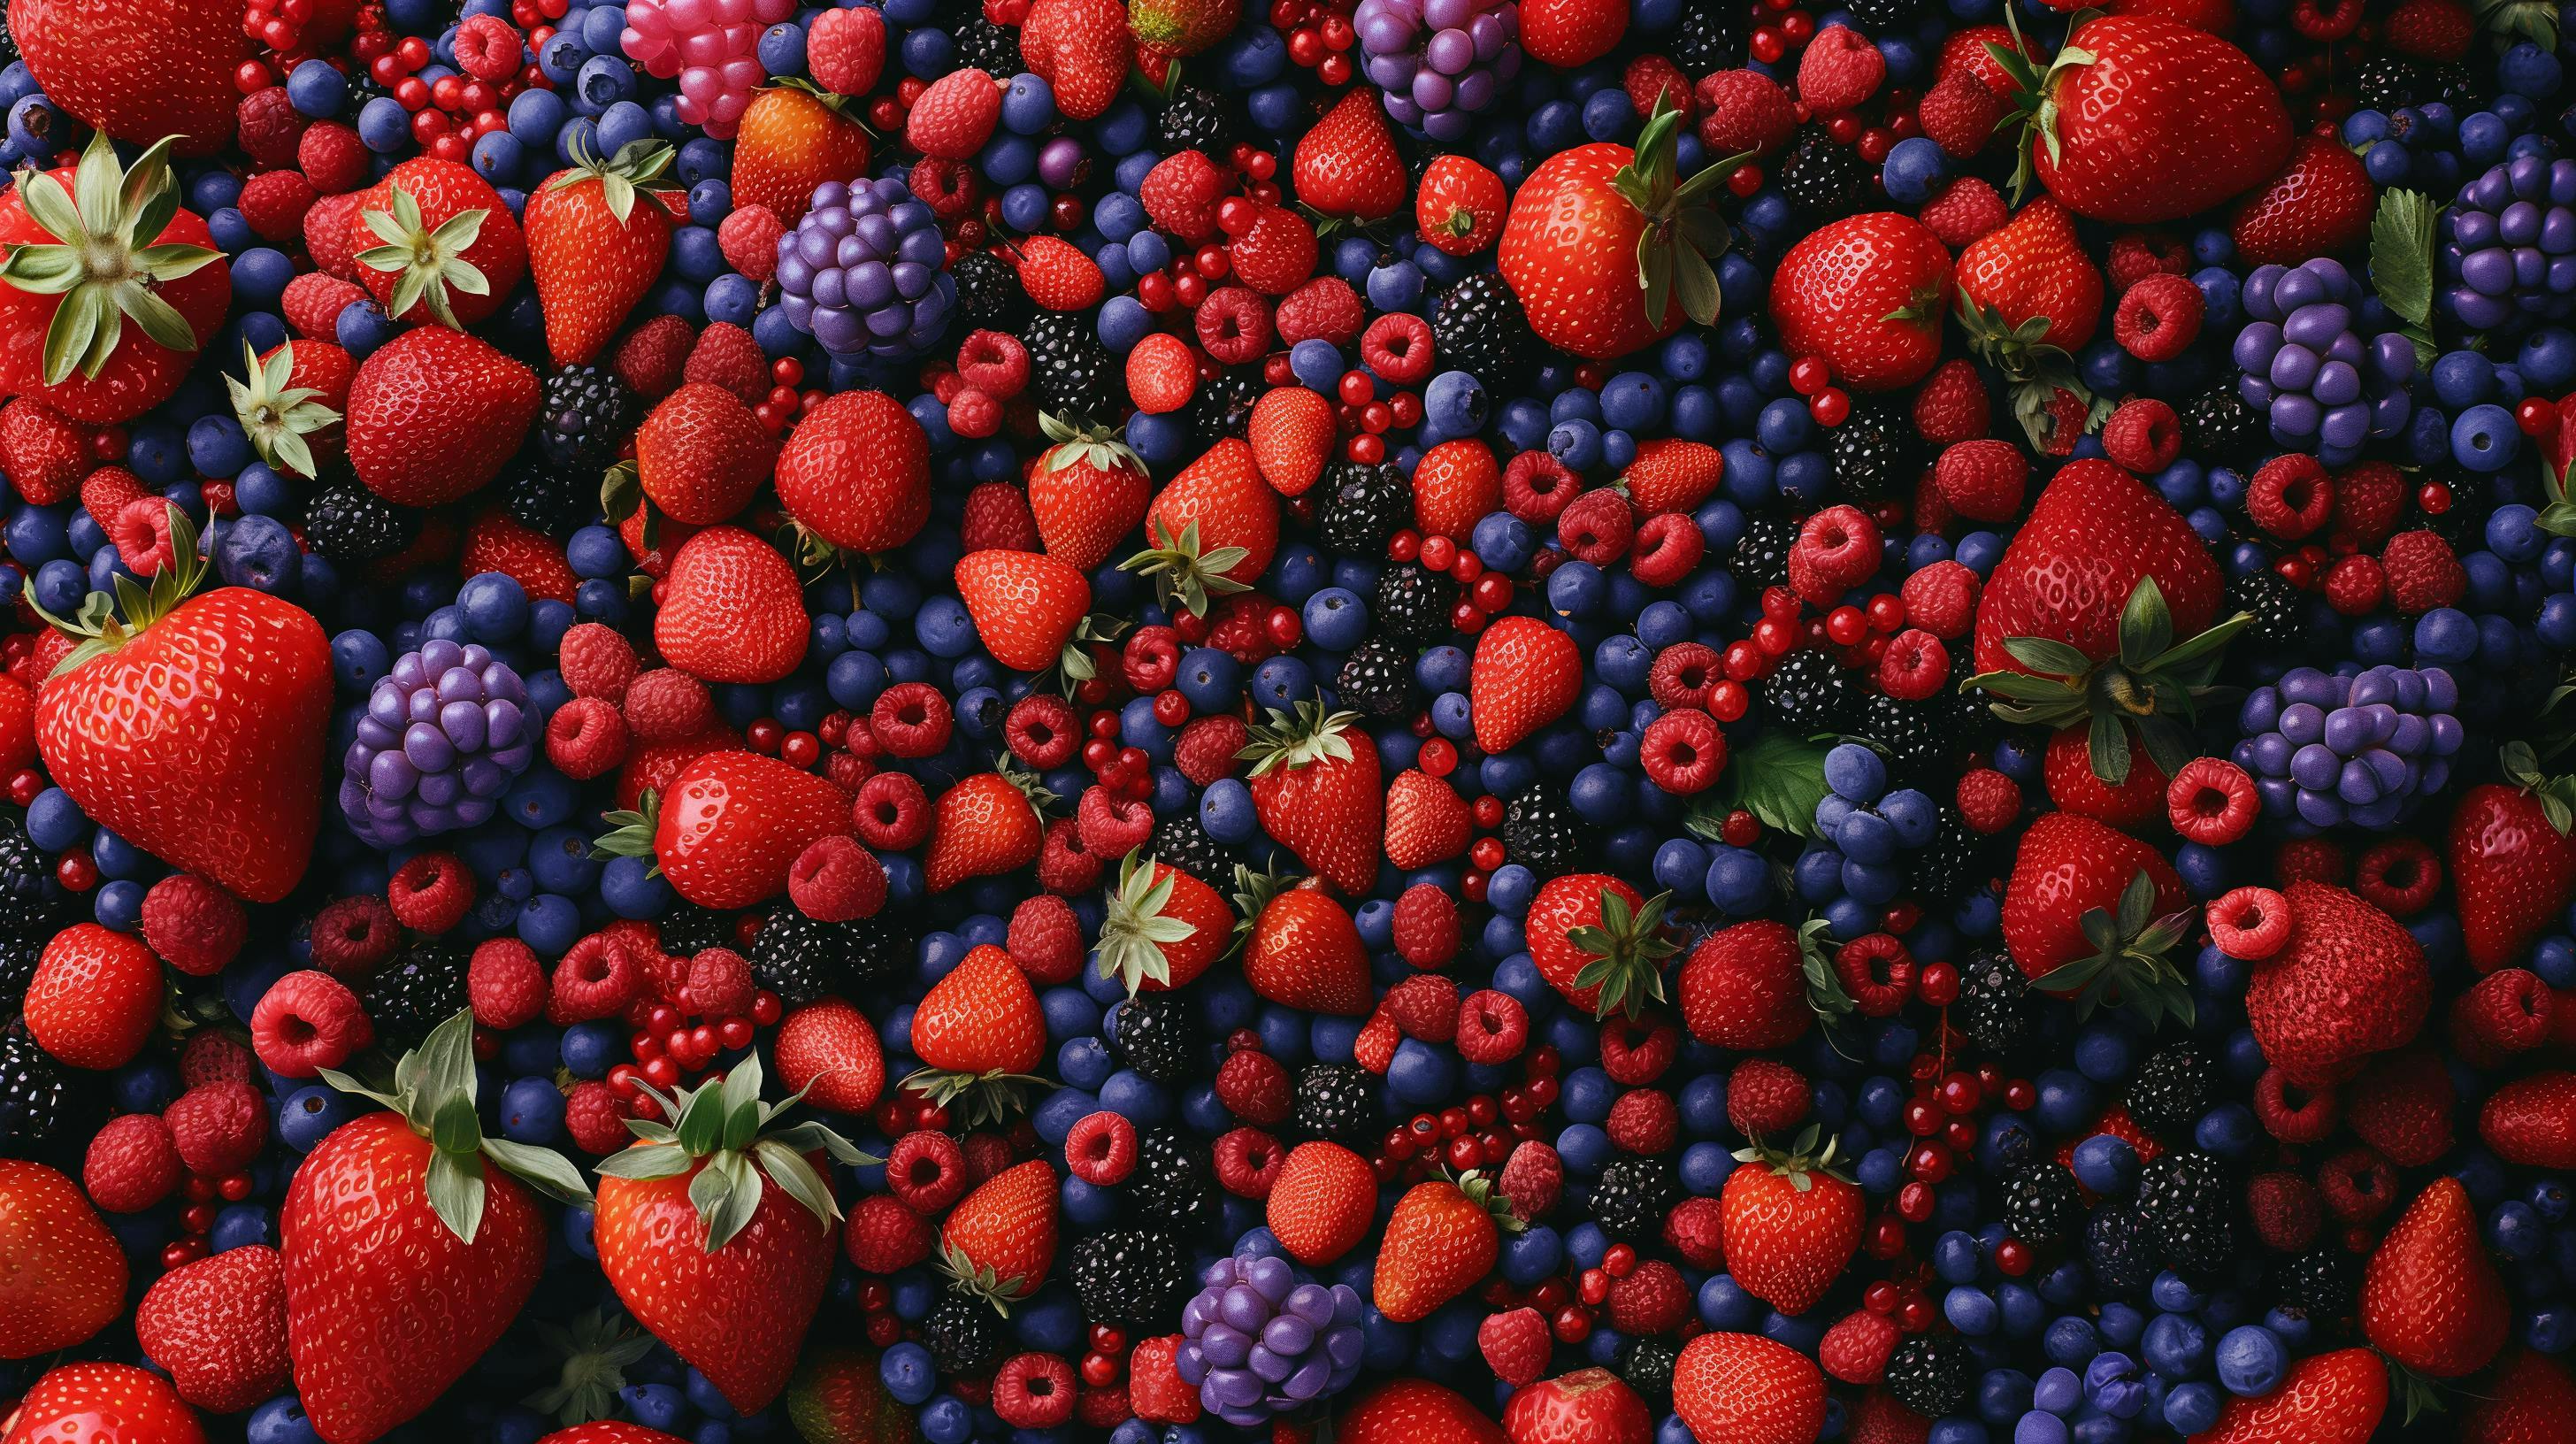 Abbildung mit Himbeeren, Erdbeeren und Blaubeeren